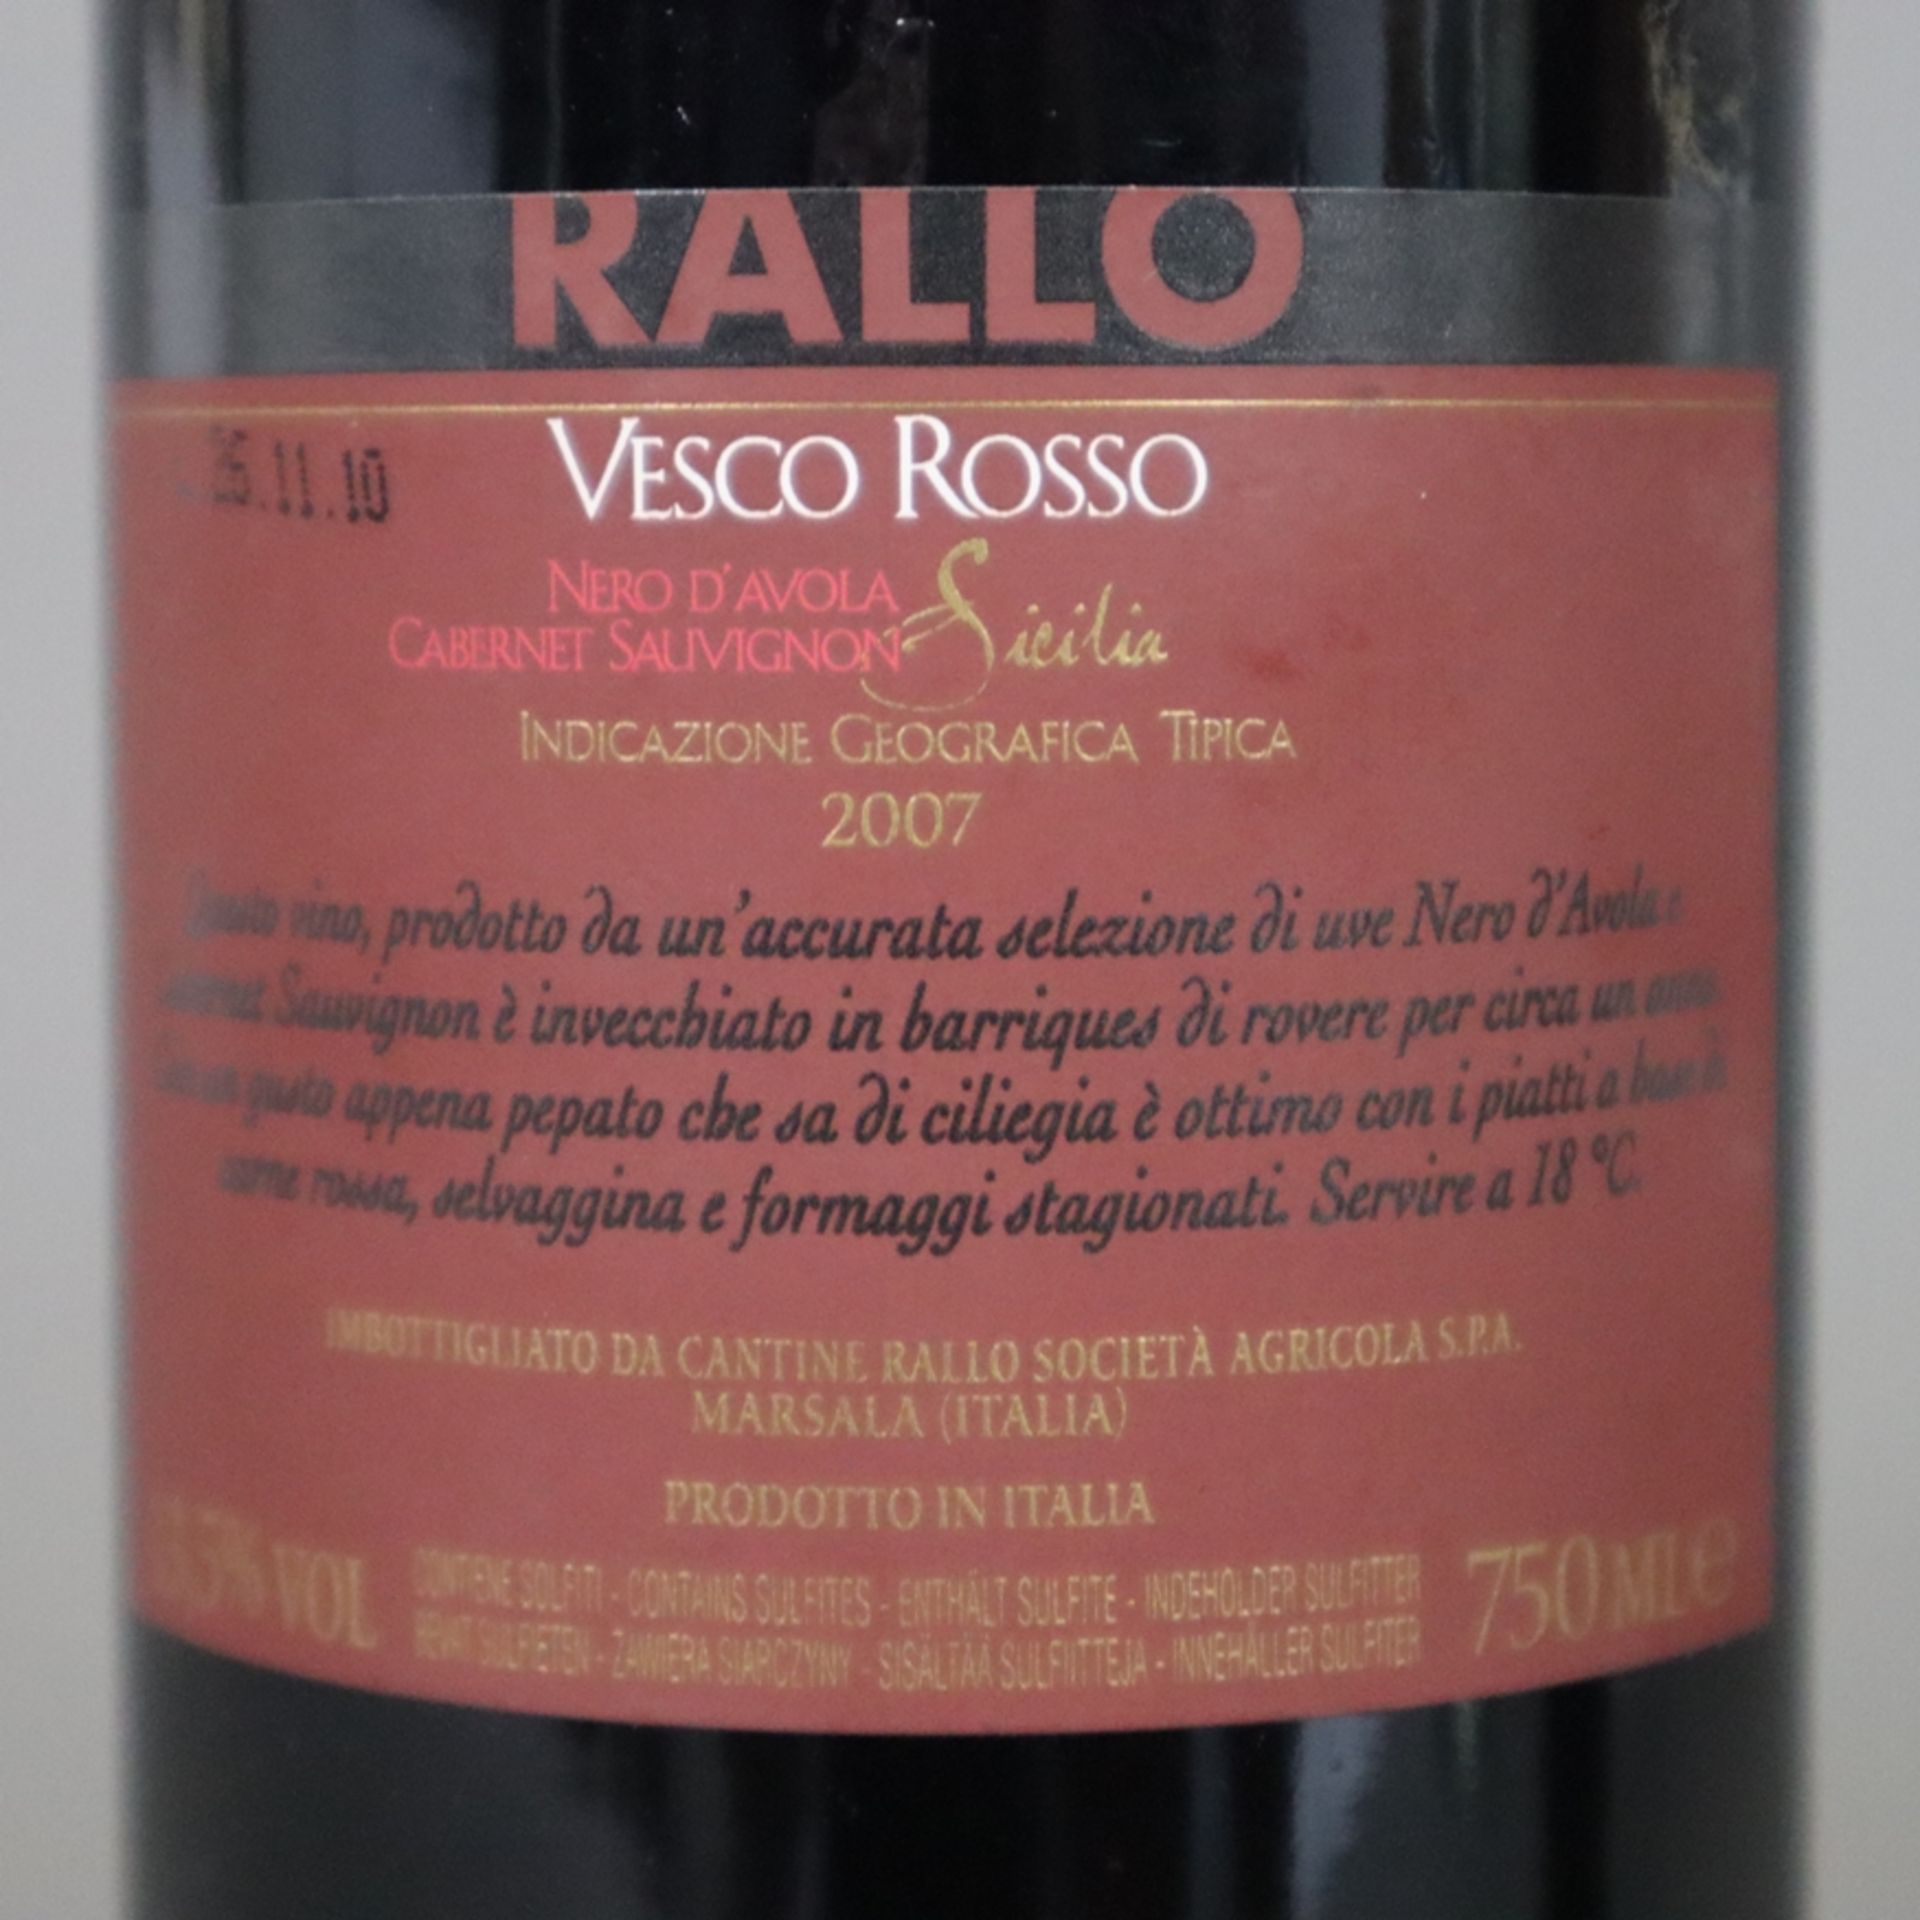 Weinkonvolut - 2 Flaschen 2007 Rallo Vesco Rosso Nero d'Avola /Cabernet Sauvignon Sicilia IG, Itali - Bild 5 aus 5